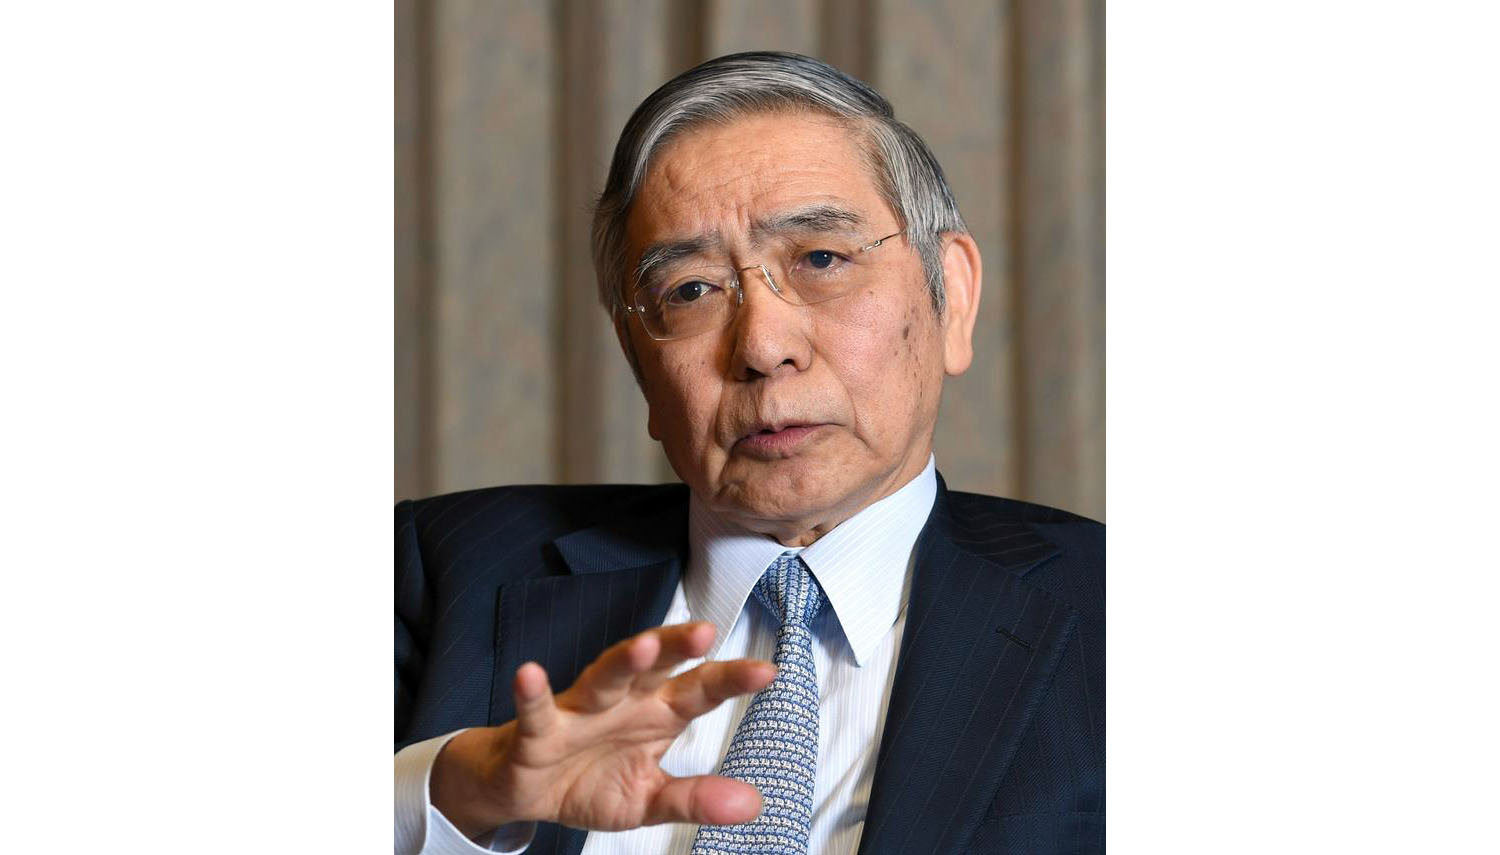 黒田日銀総裁「経済や市場注視し適切な対応」